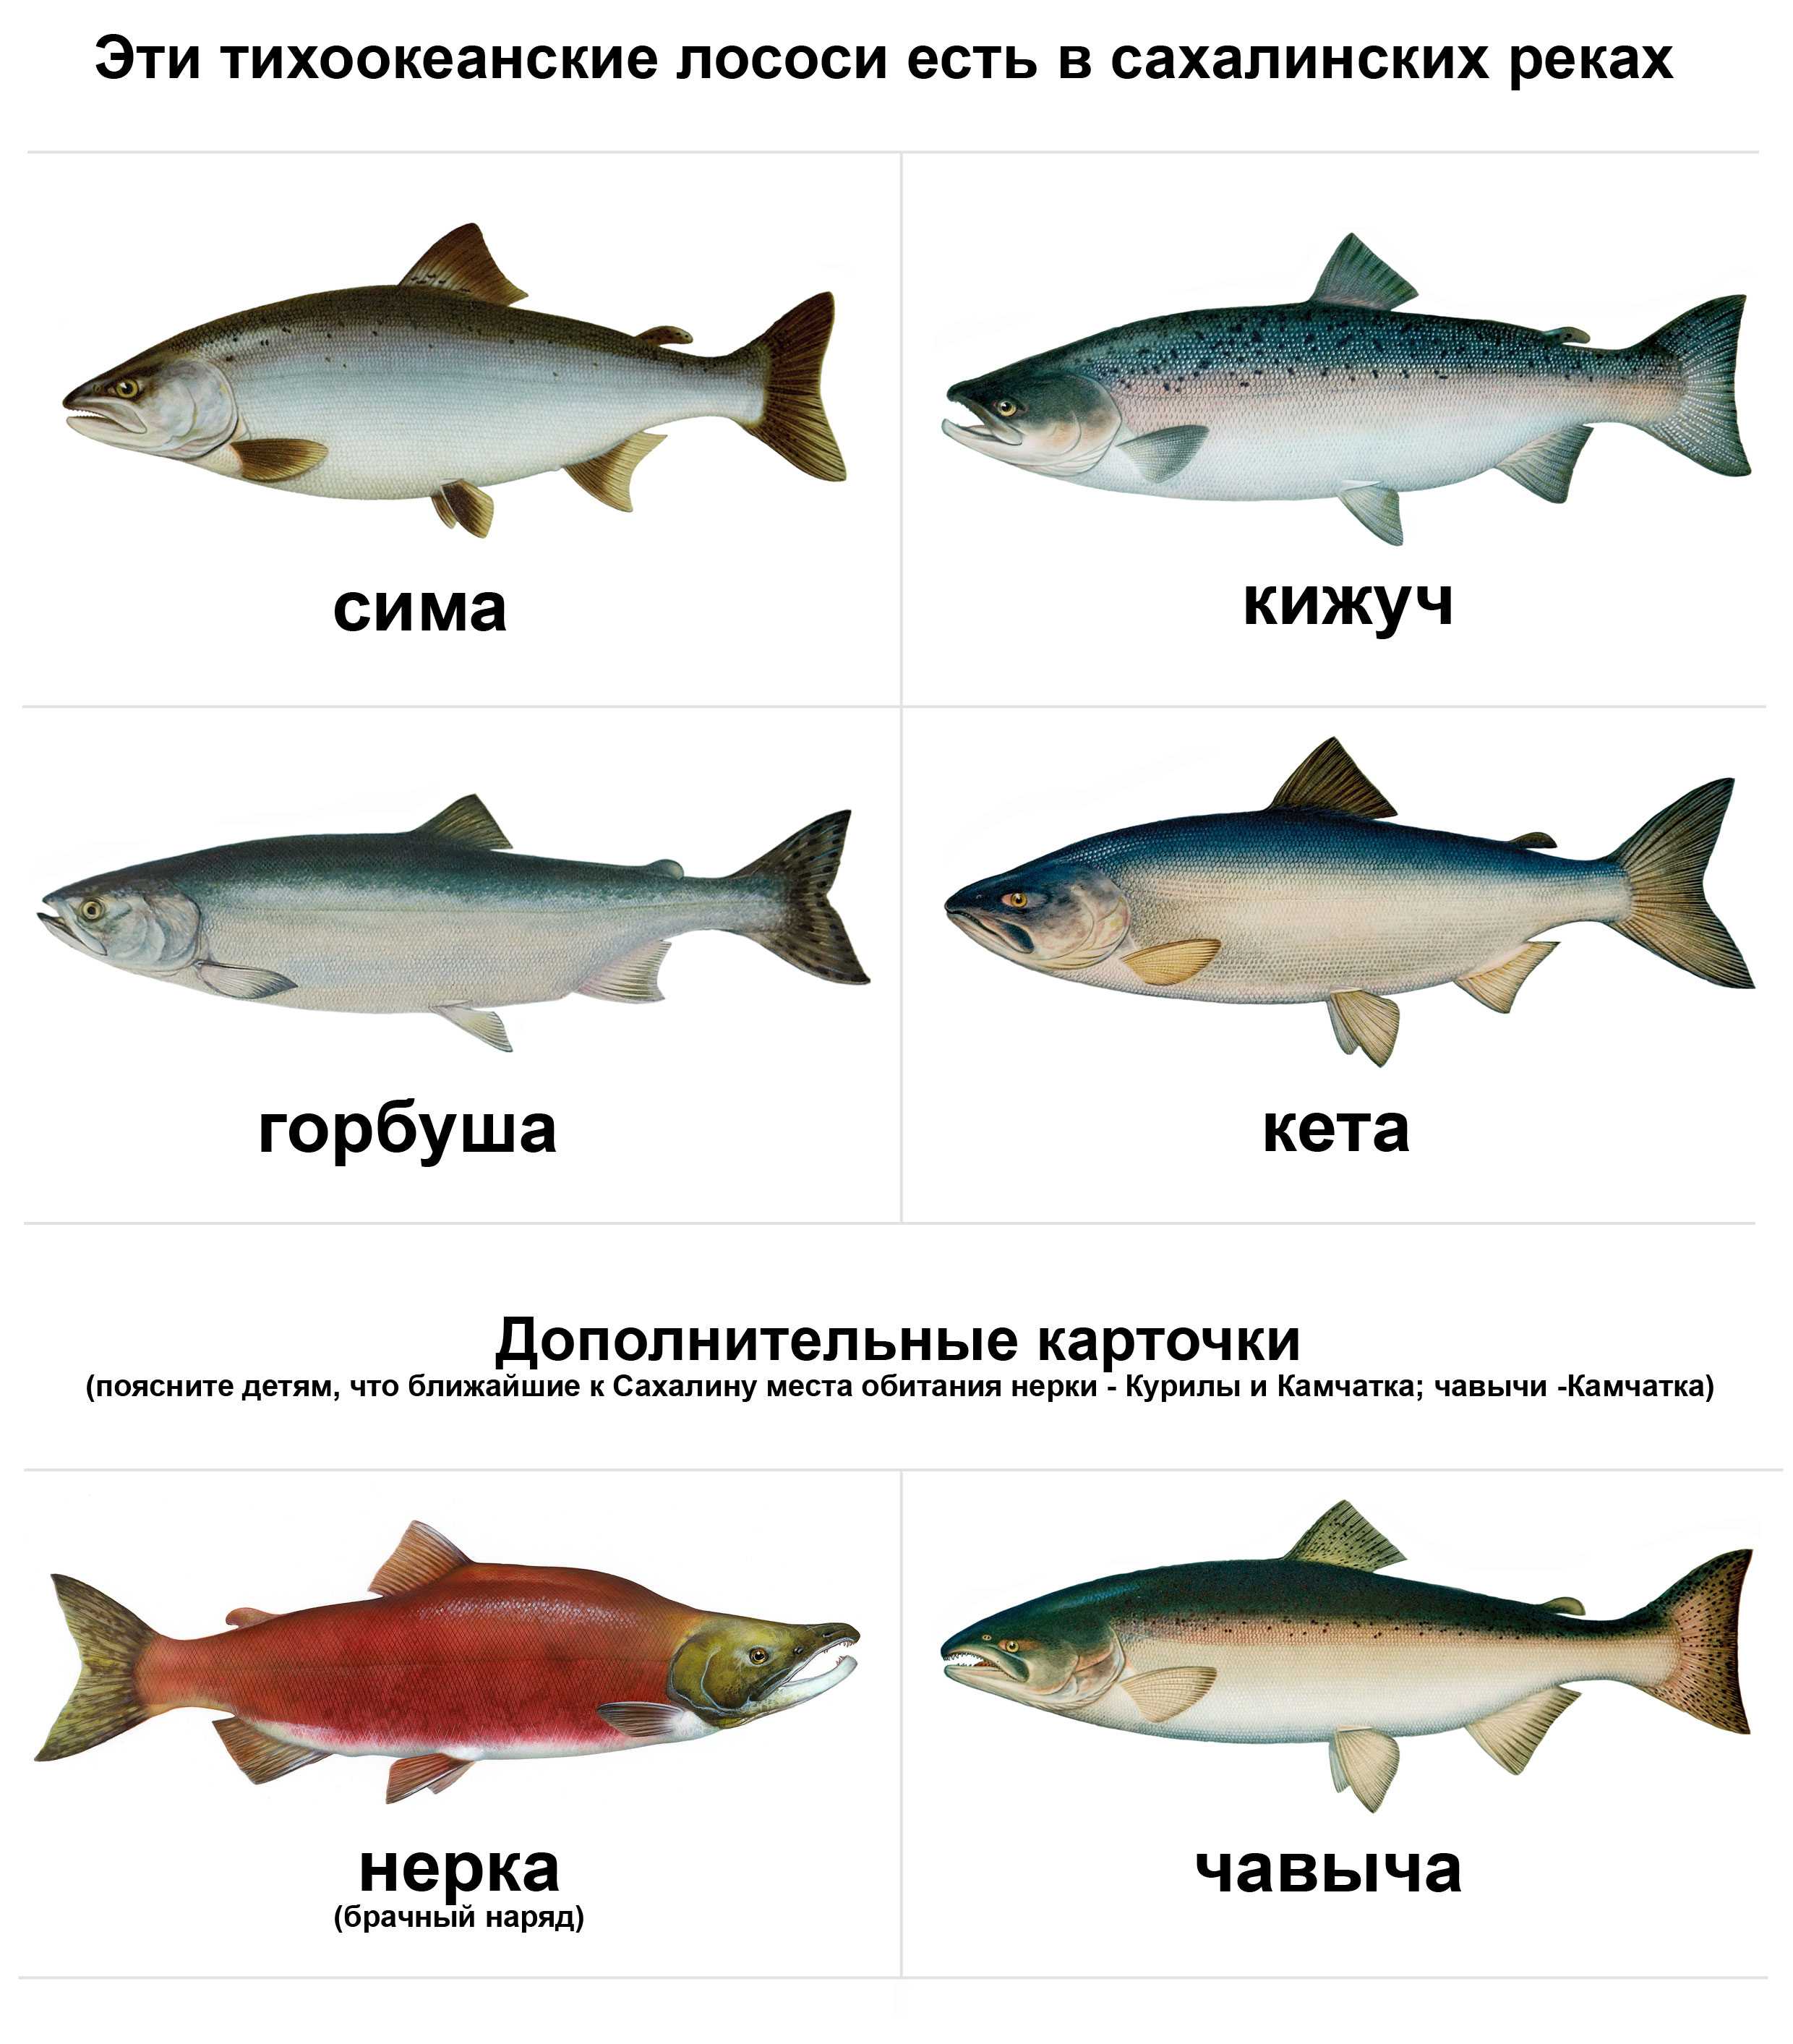 Рыба семейства лососевых с белым мясом название